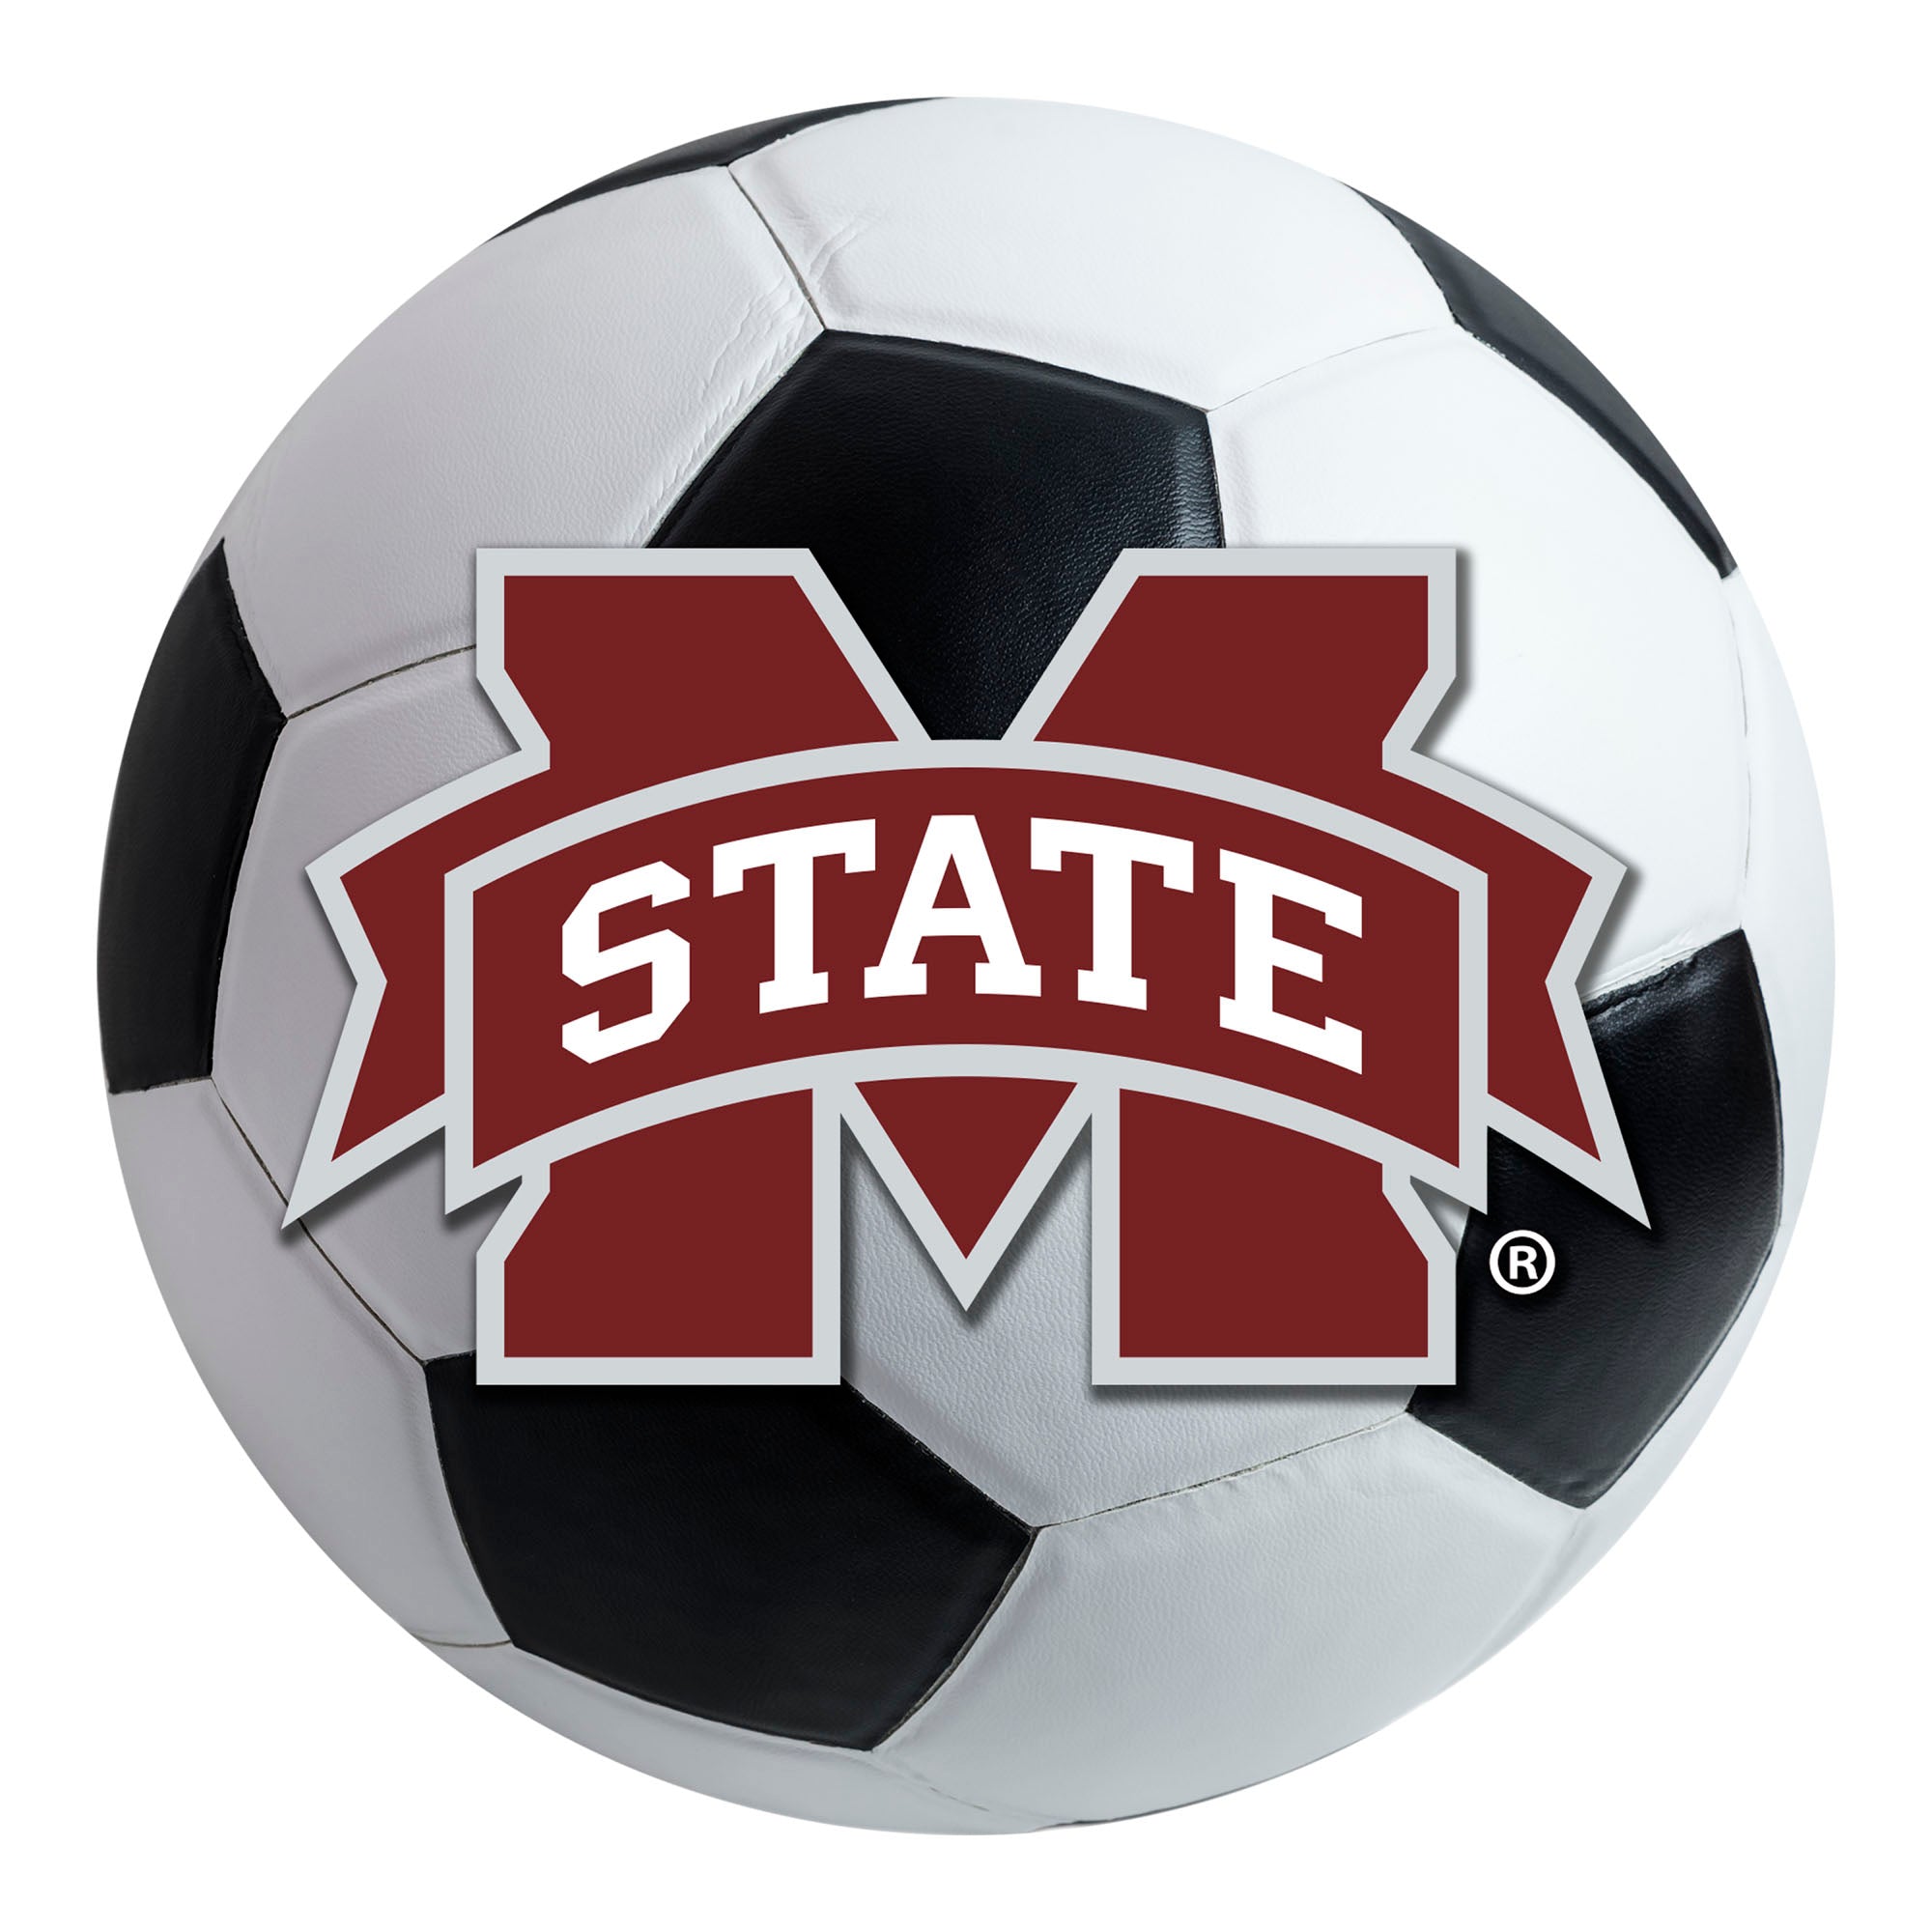 FANMATS, Mississippi State University Soccer Ball Rug - 27in. Diameter